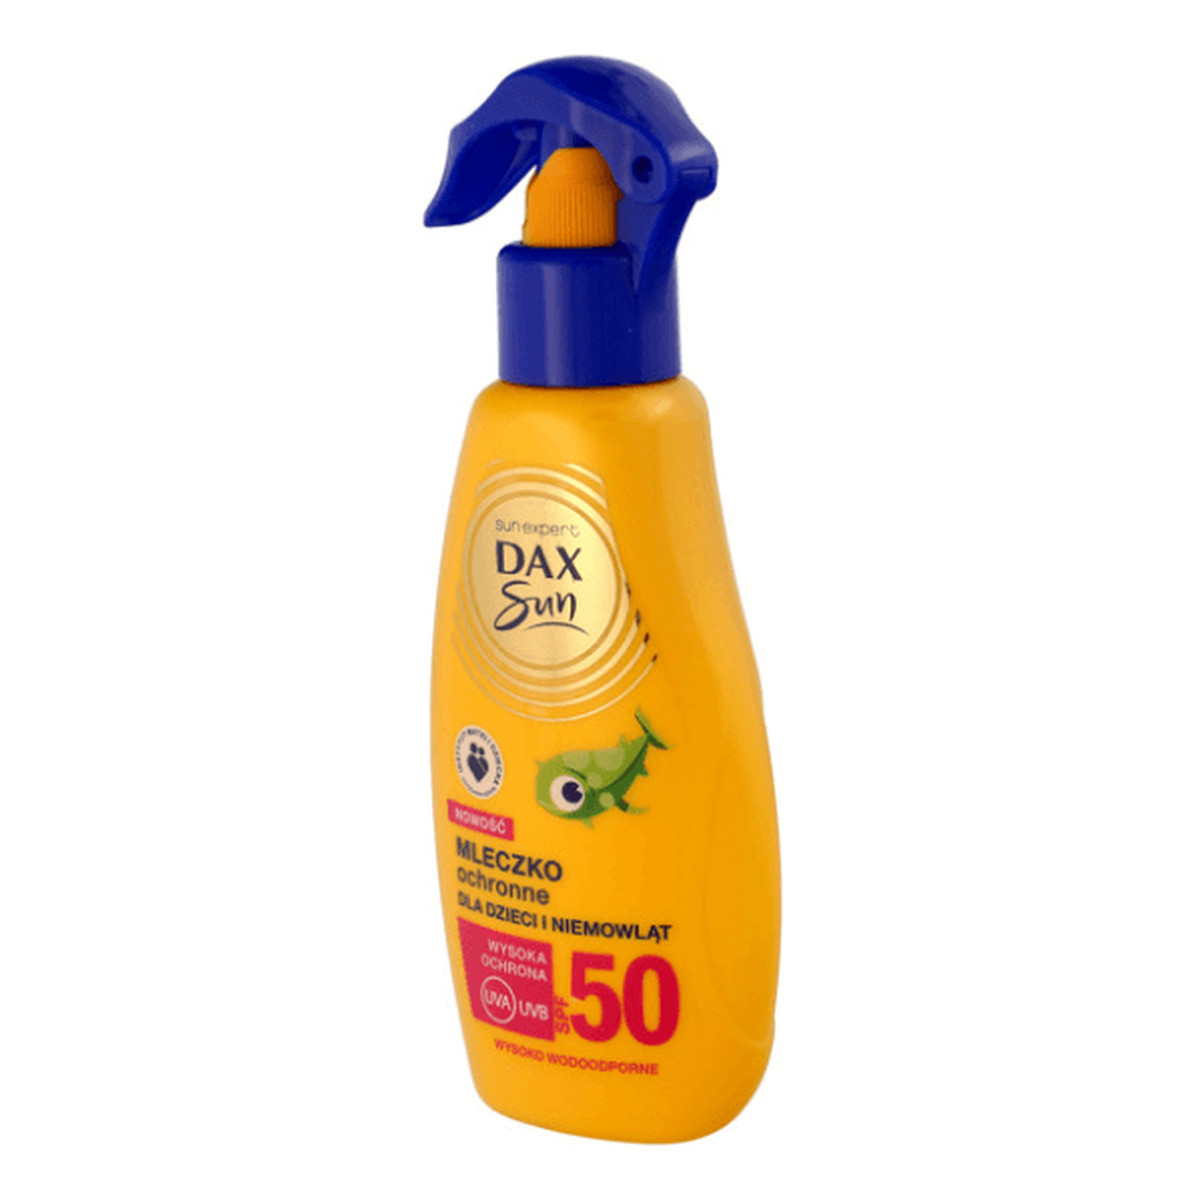 Dax Sun SPF50 Mleczko ochronne dla dzieci i niemowląt spray 200ml